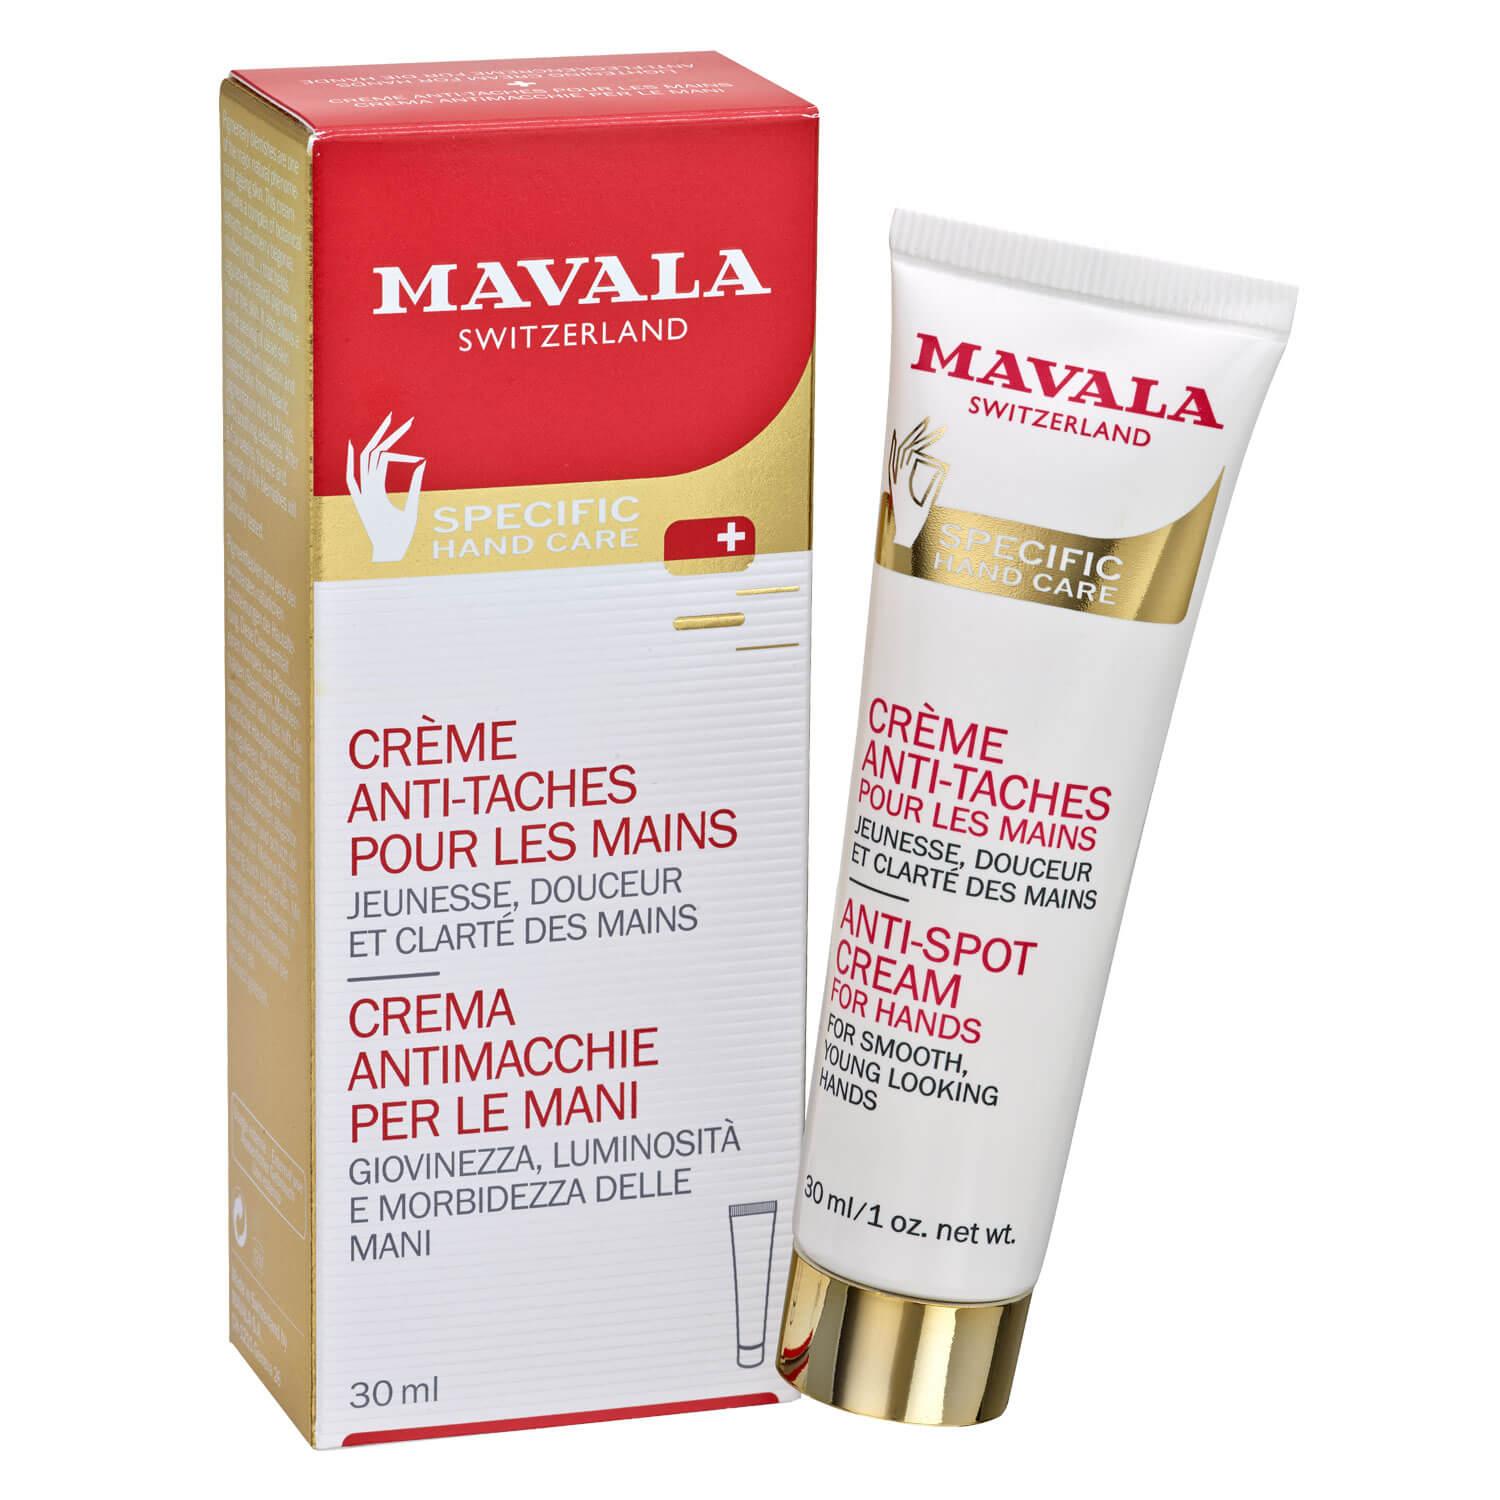 MAVALA Care - Hand Creme